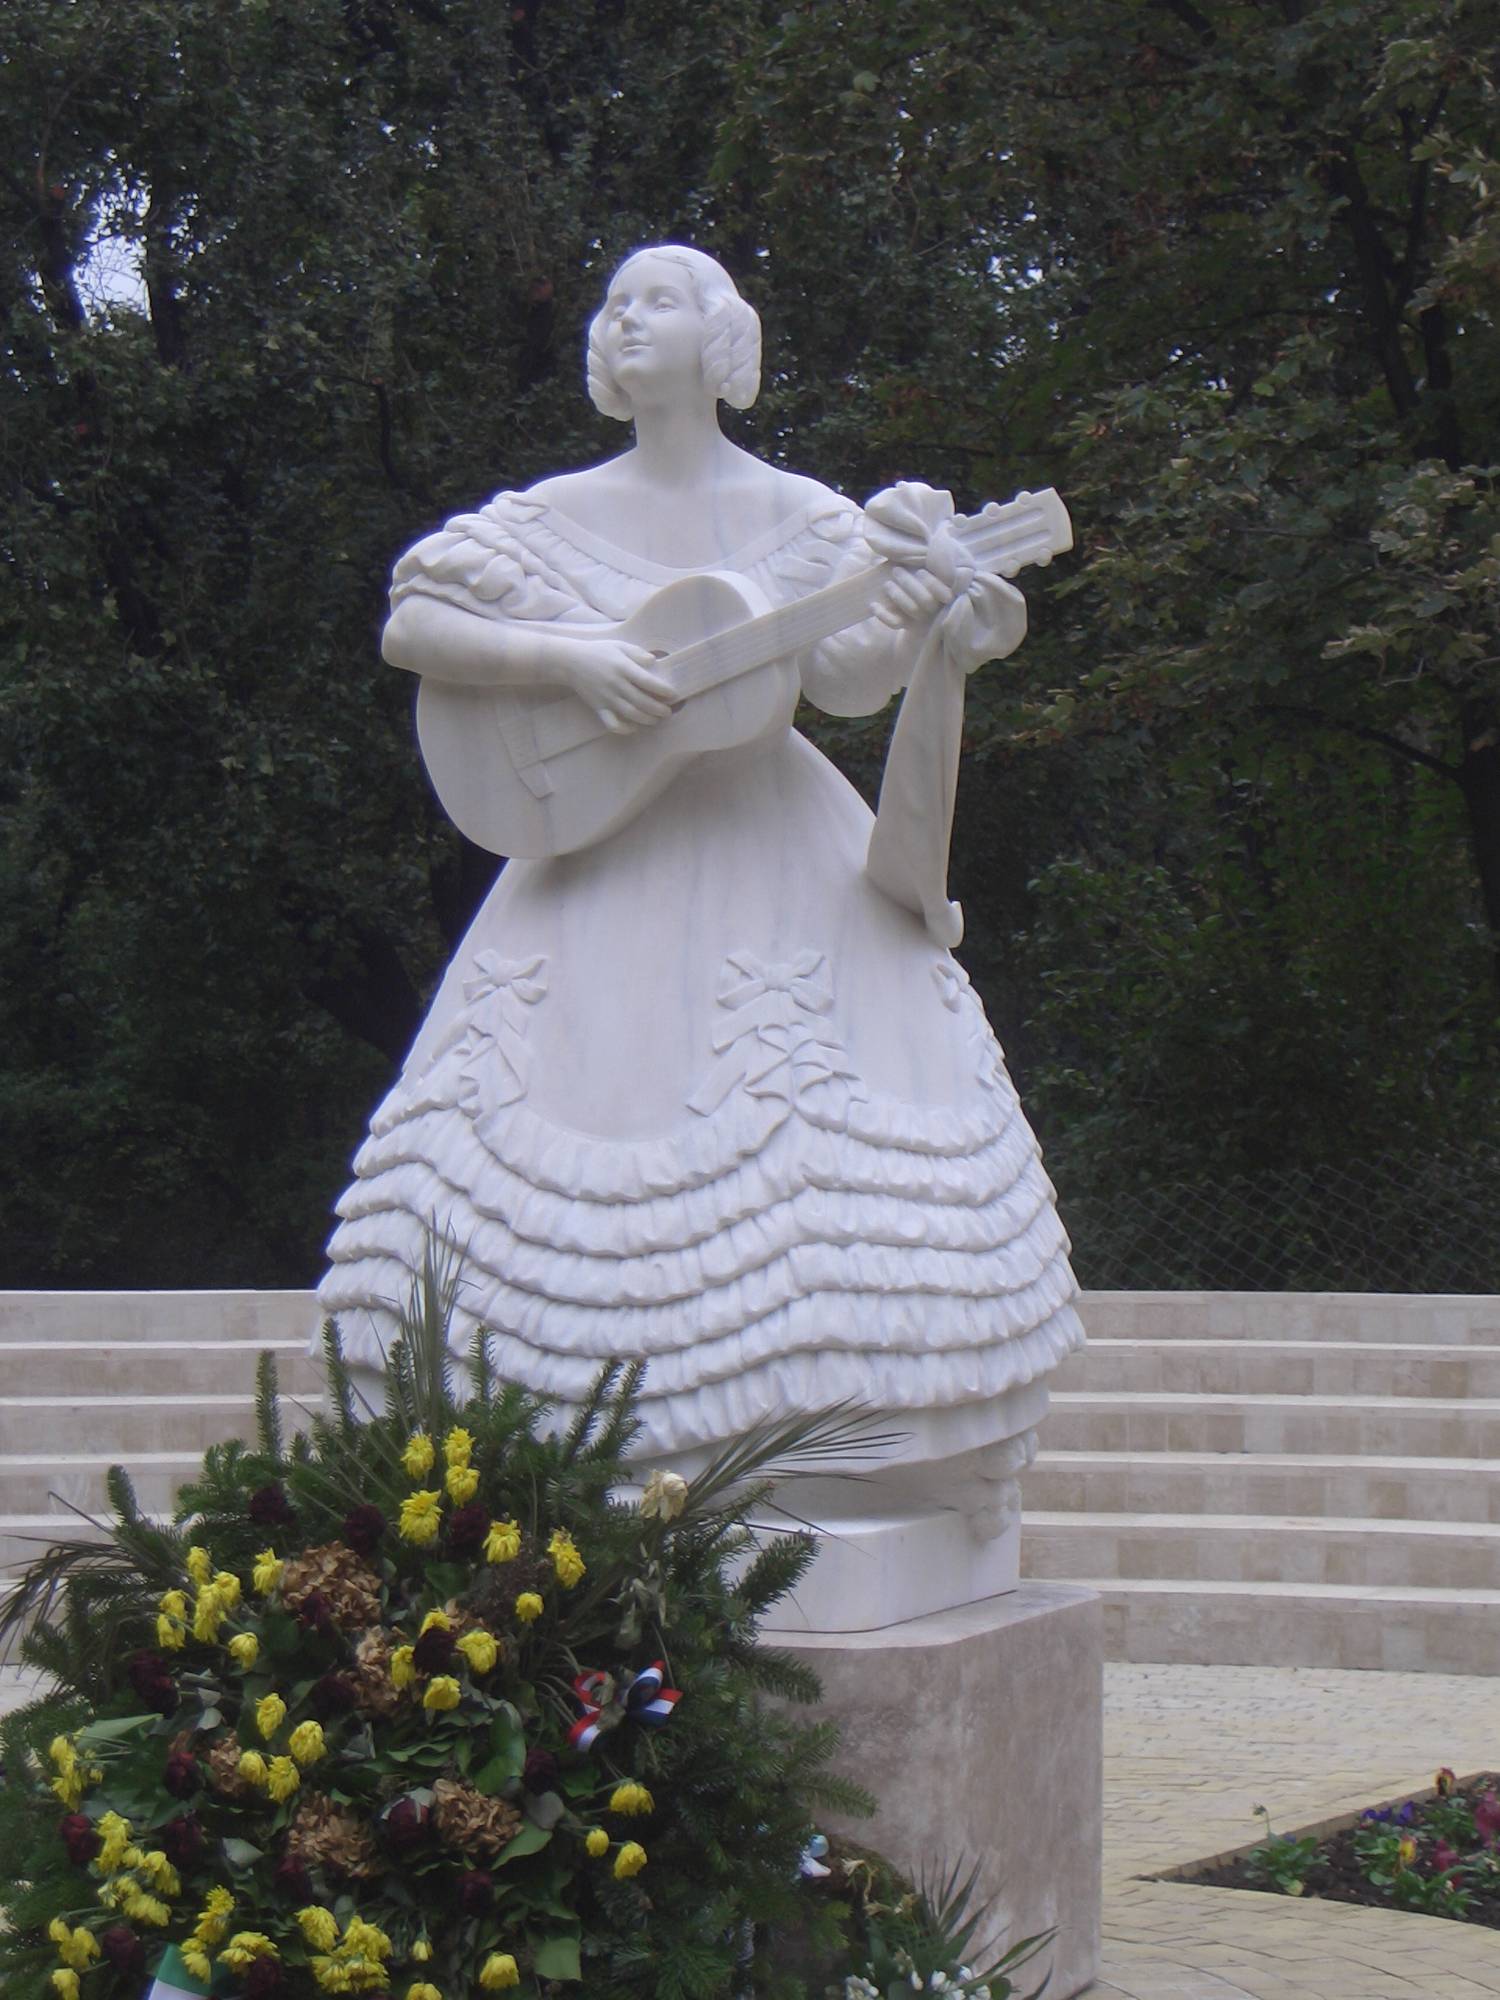 Déryné szobra Budapesten, a Horváth-kertben. Ligeti Miklós eredeti (1935-ös) szobrának másolata, Polgár Botond műve.